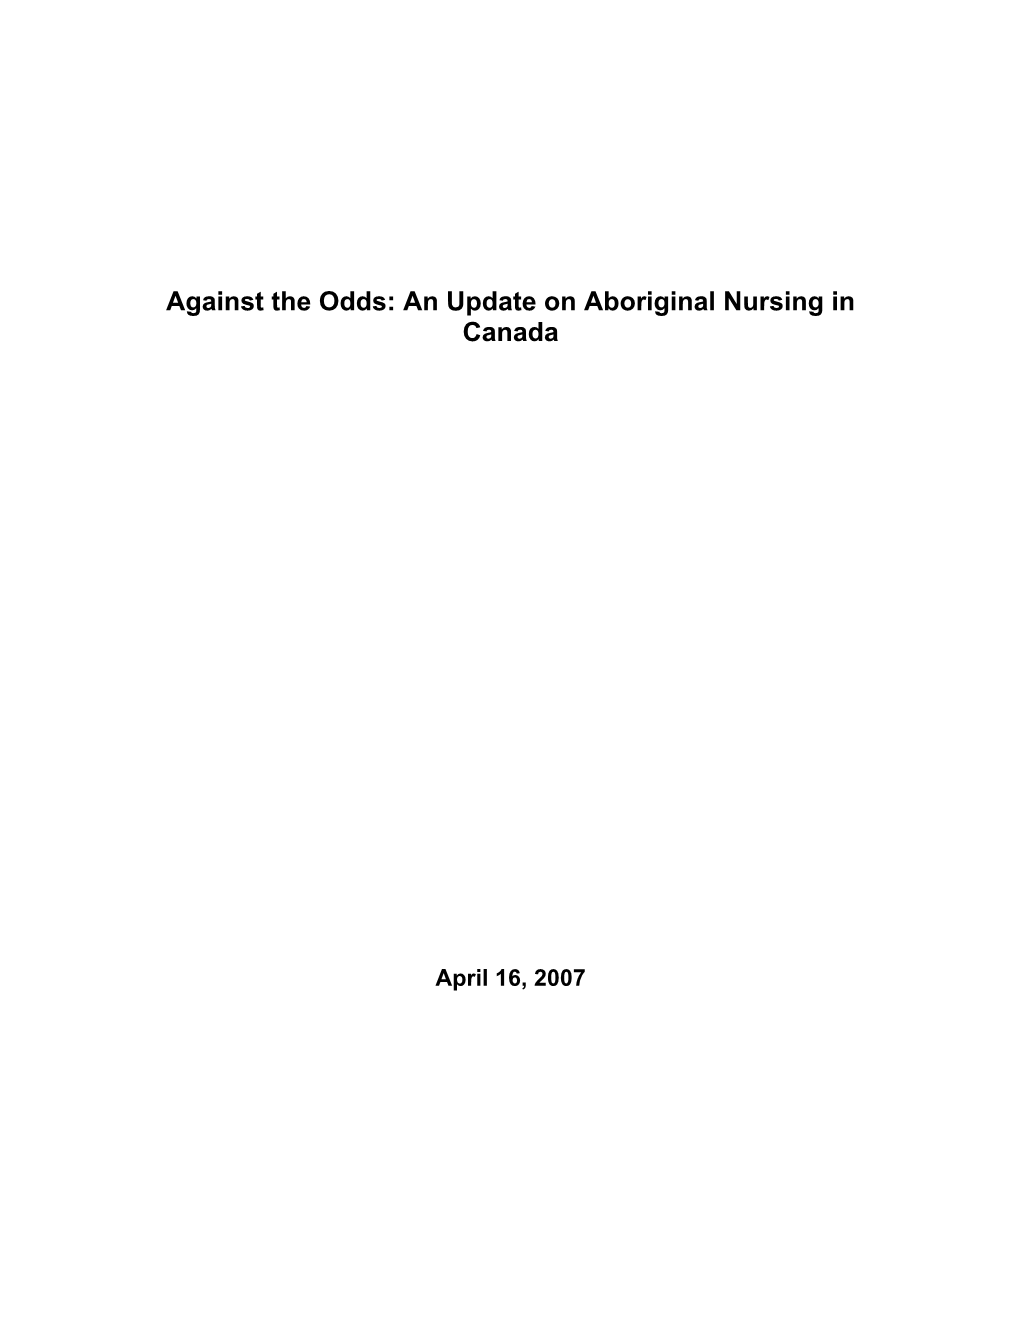 An Update on Aboriginal Nursing in Canada